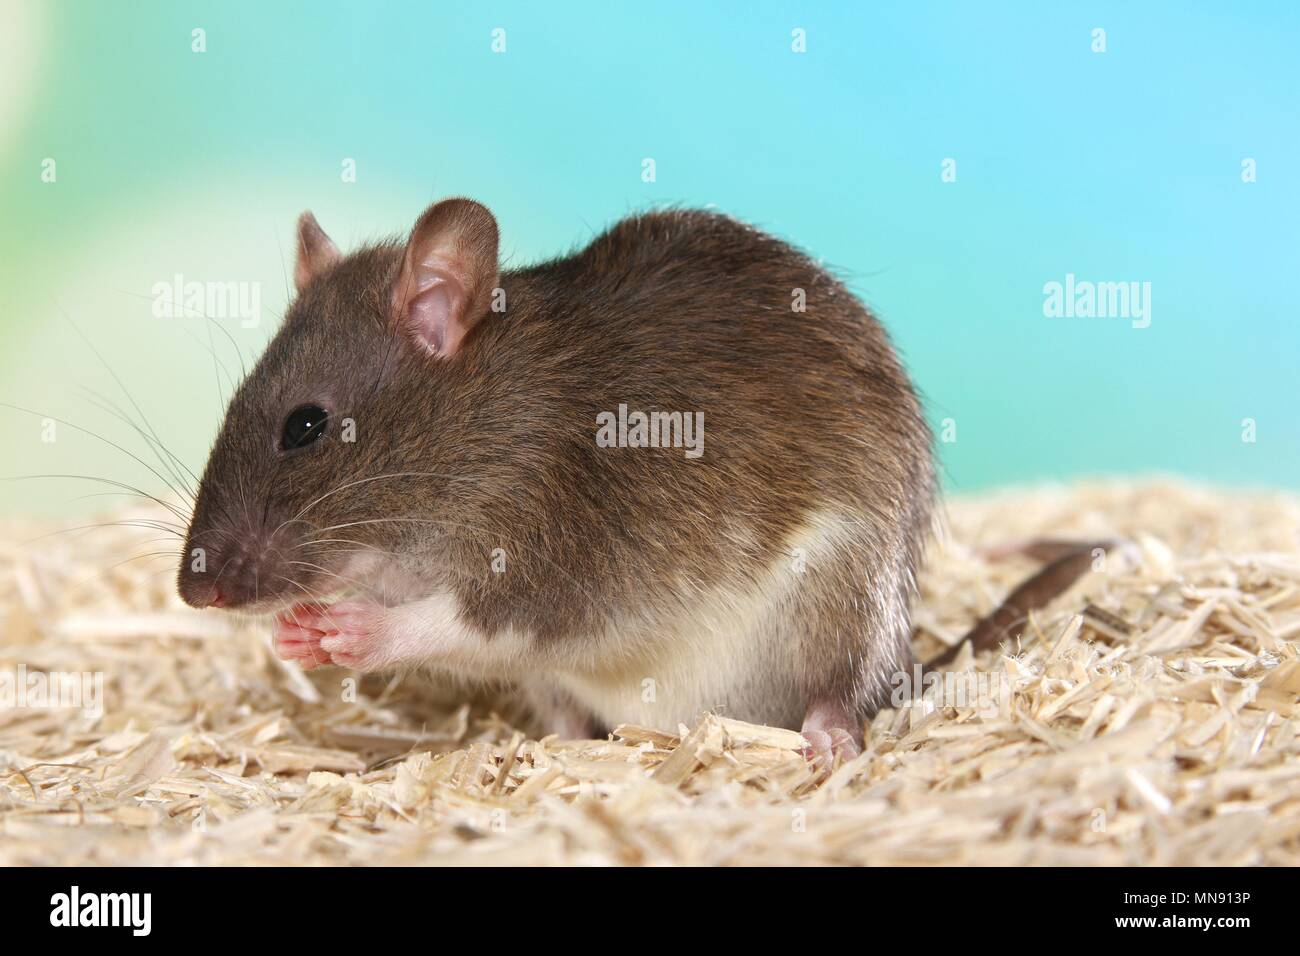 fancy rat Stock Photo